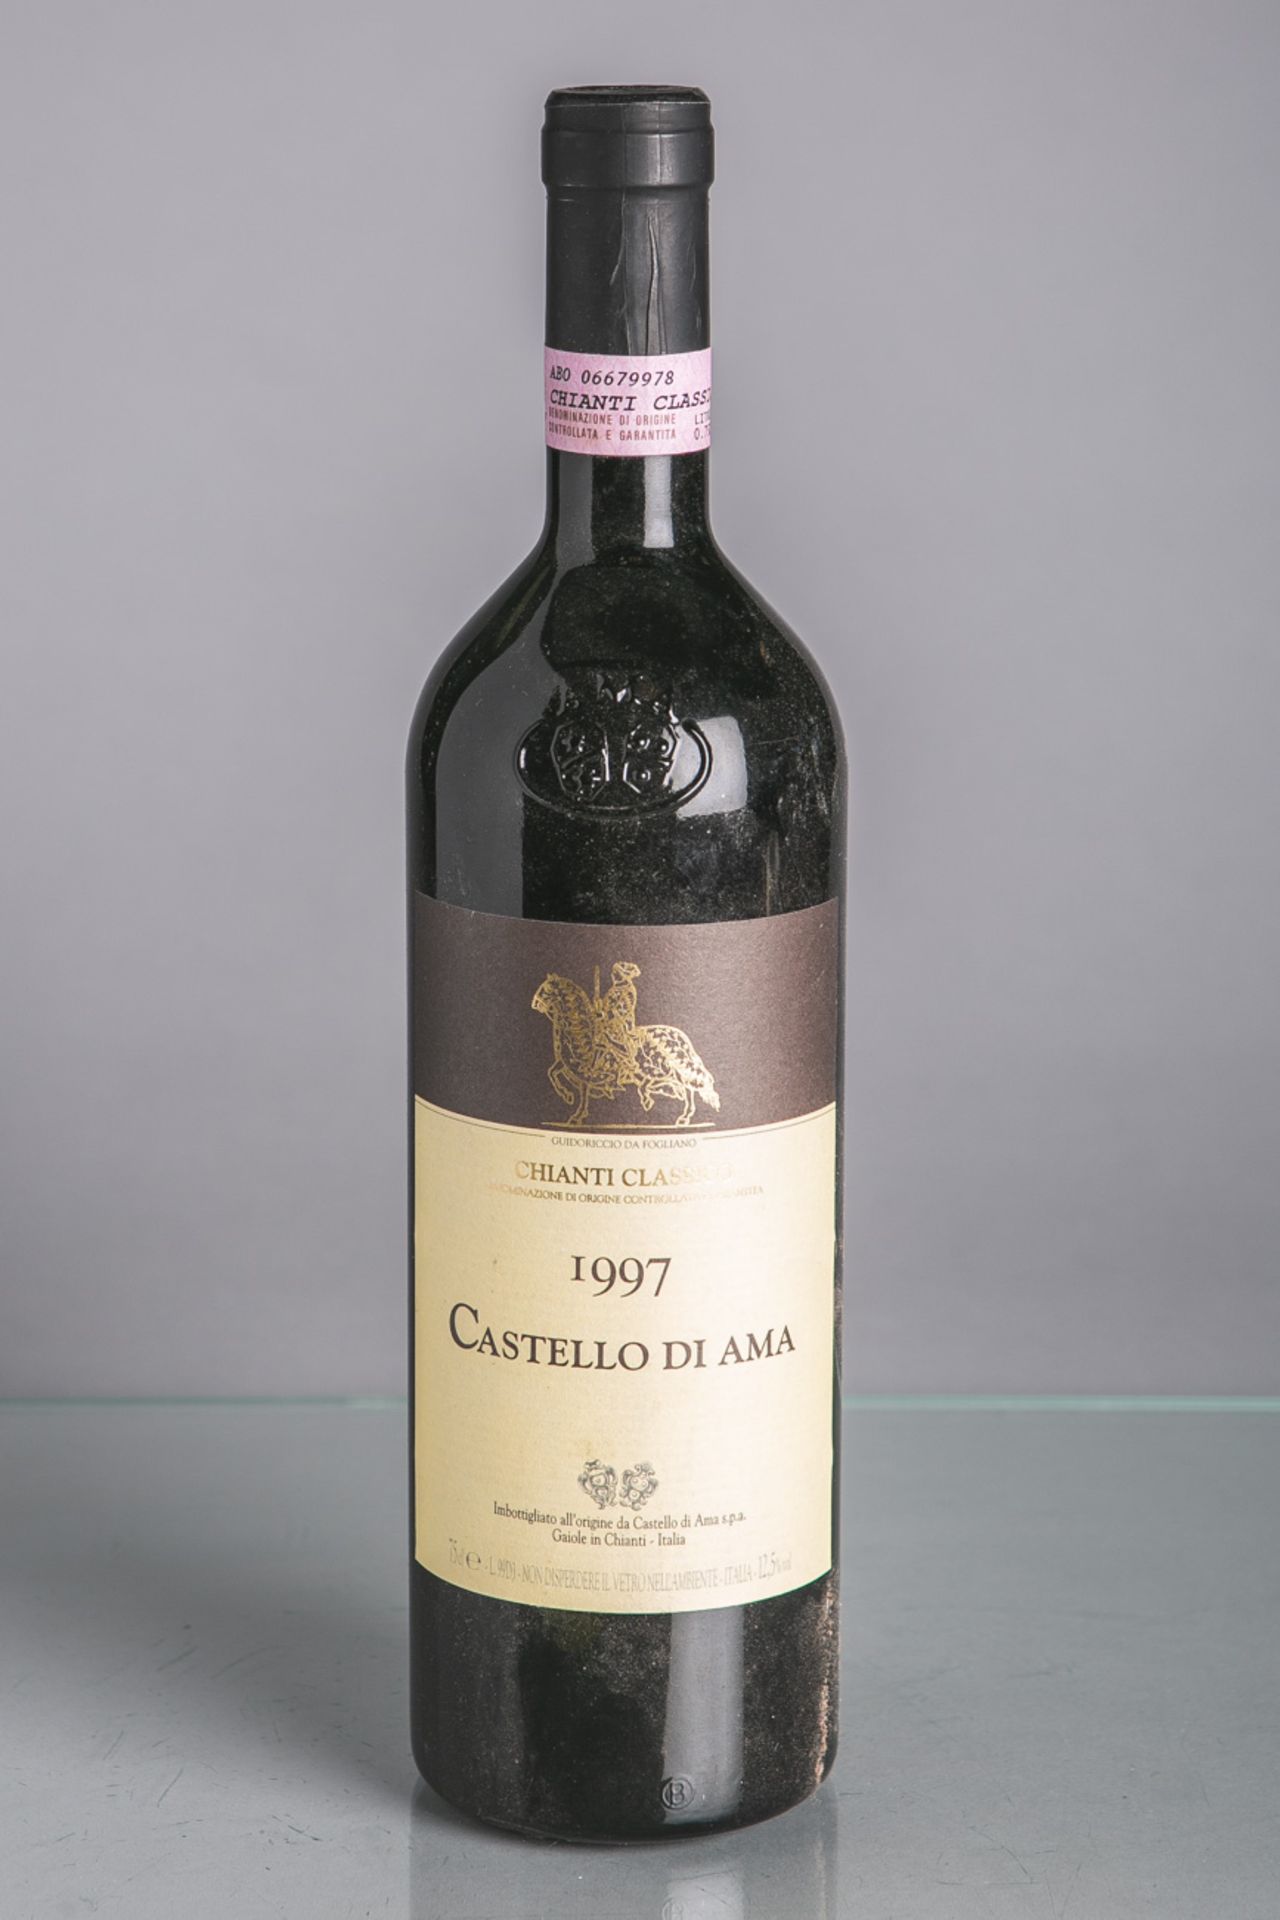 10 Flaschen von Castello di Ama, Chianti Classico (1997), Rotwein, je 0,75 L. Im